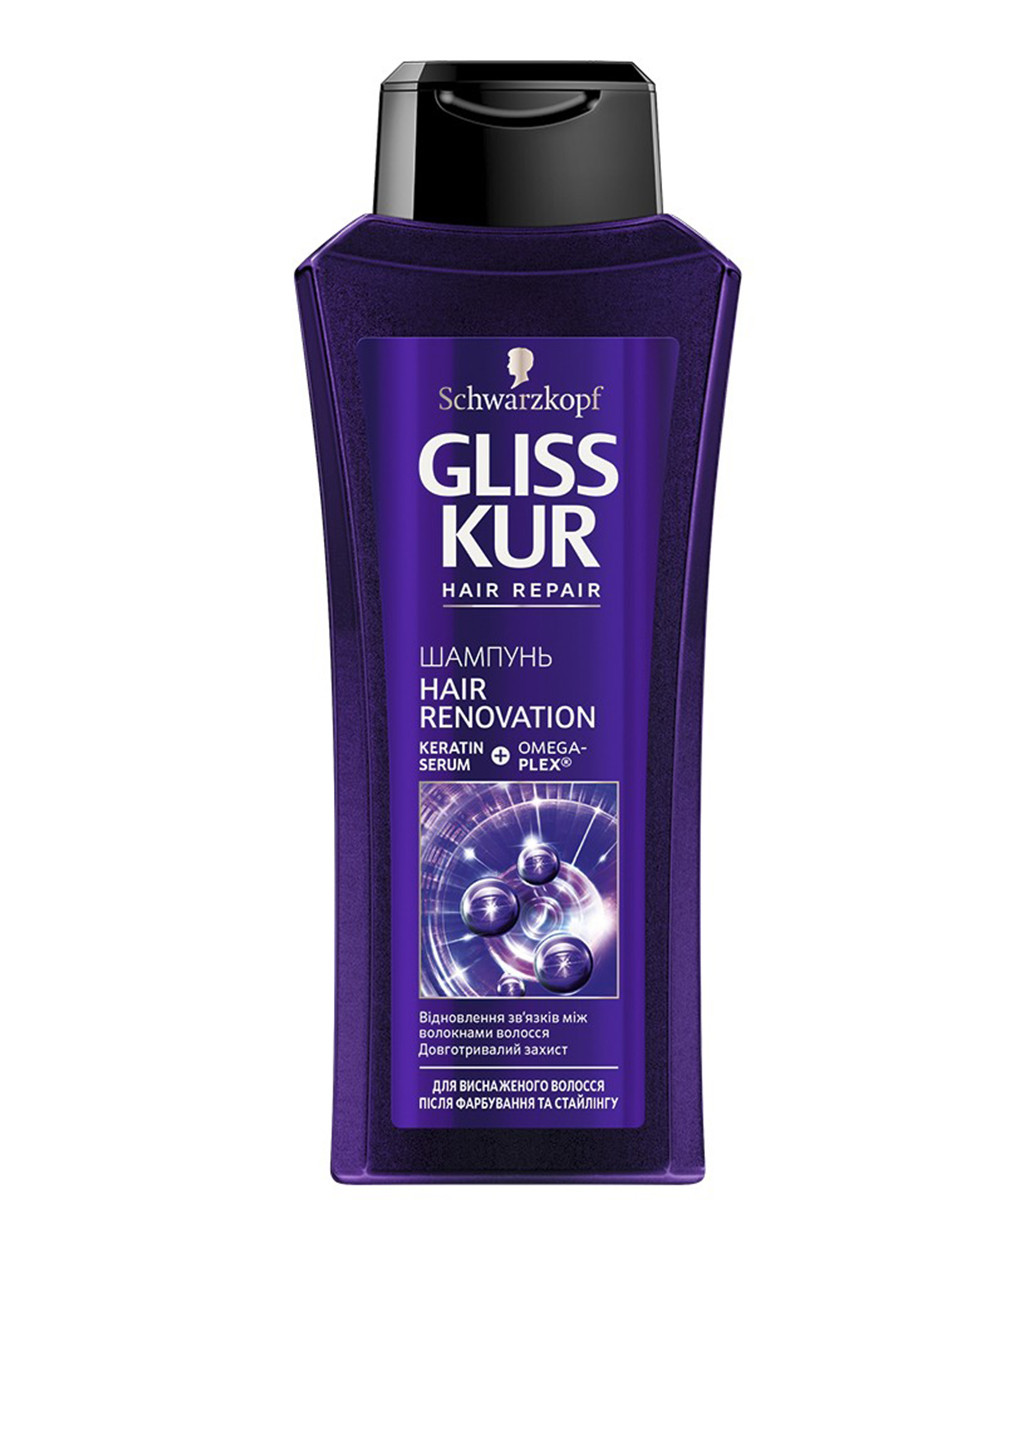 Шампунь для ослабленных и истощенных после окрашивания и стайлинга волос, 400 мл Gliss Kur (75101062)